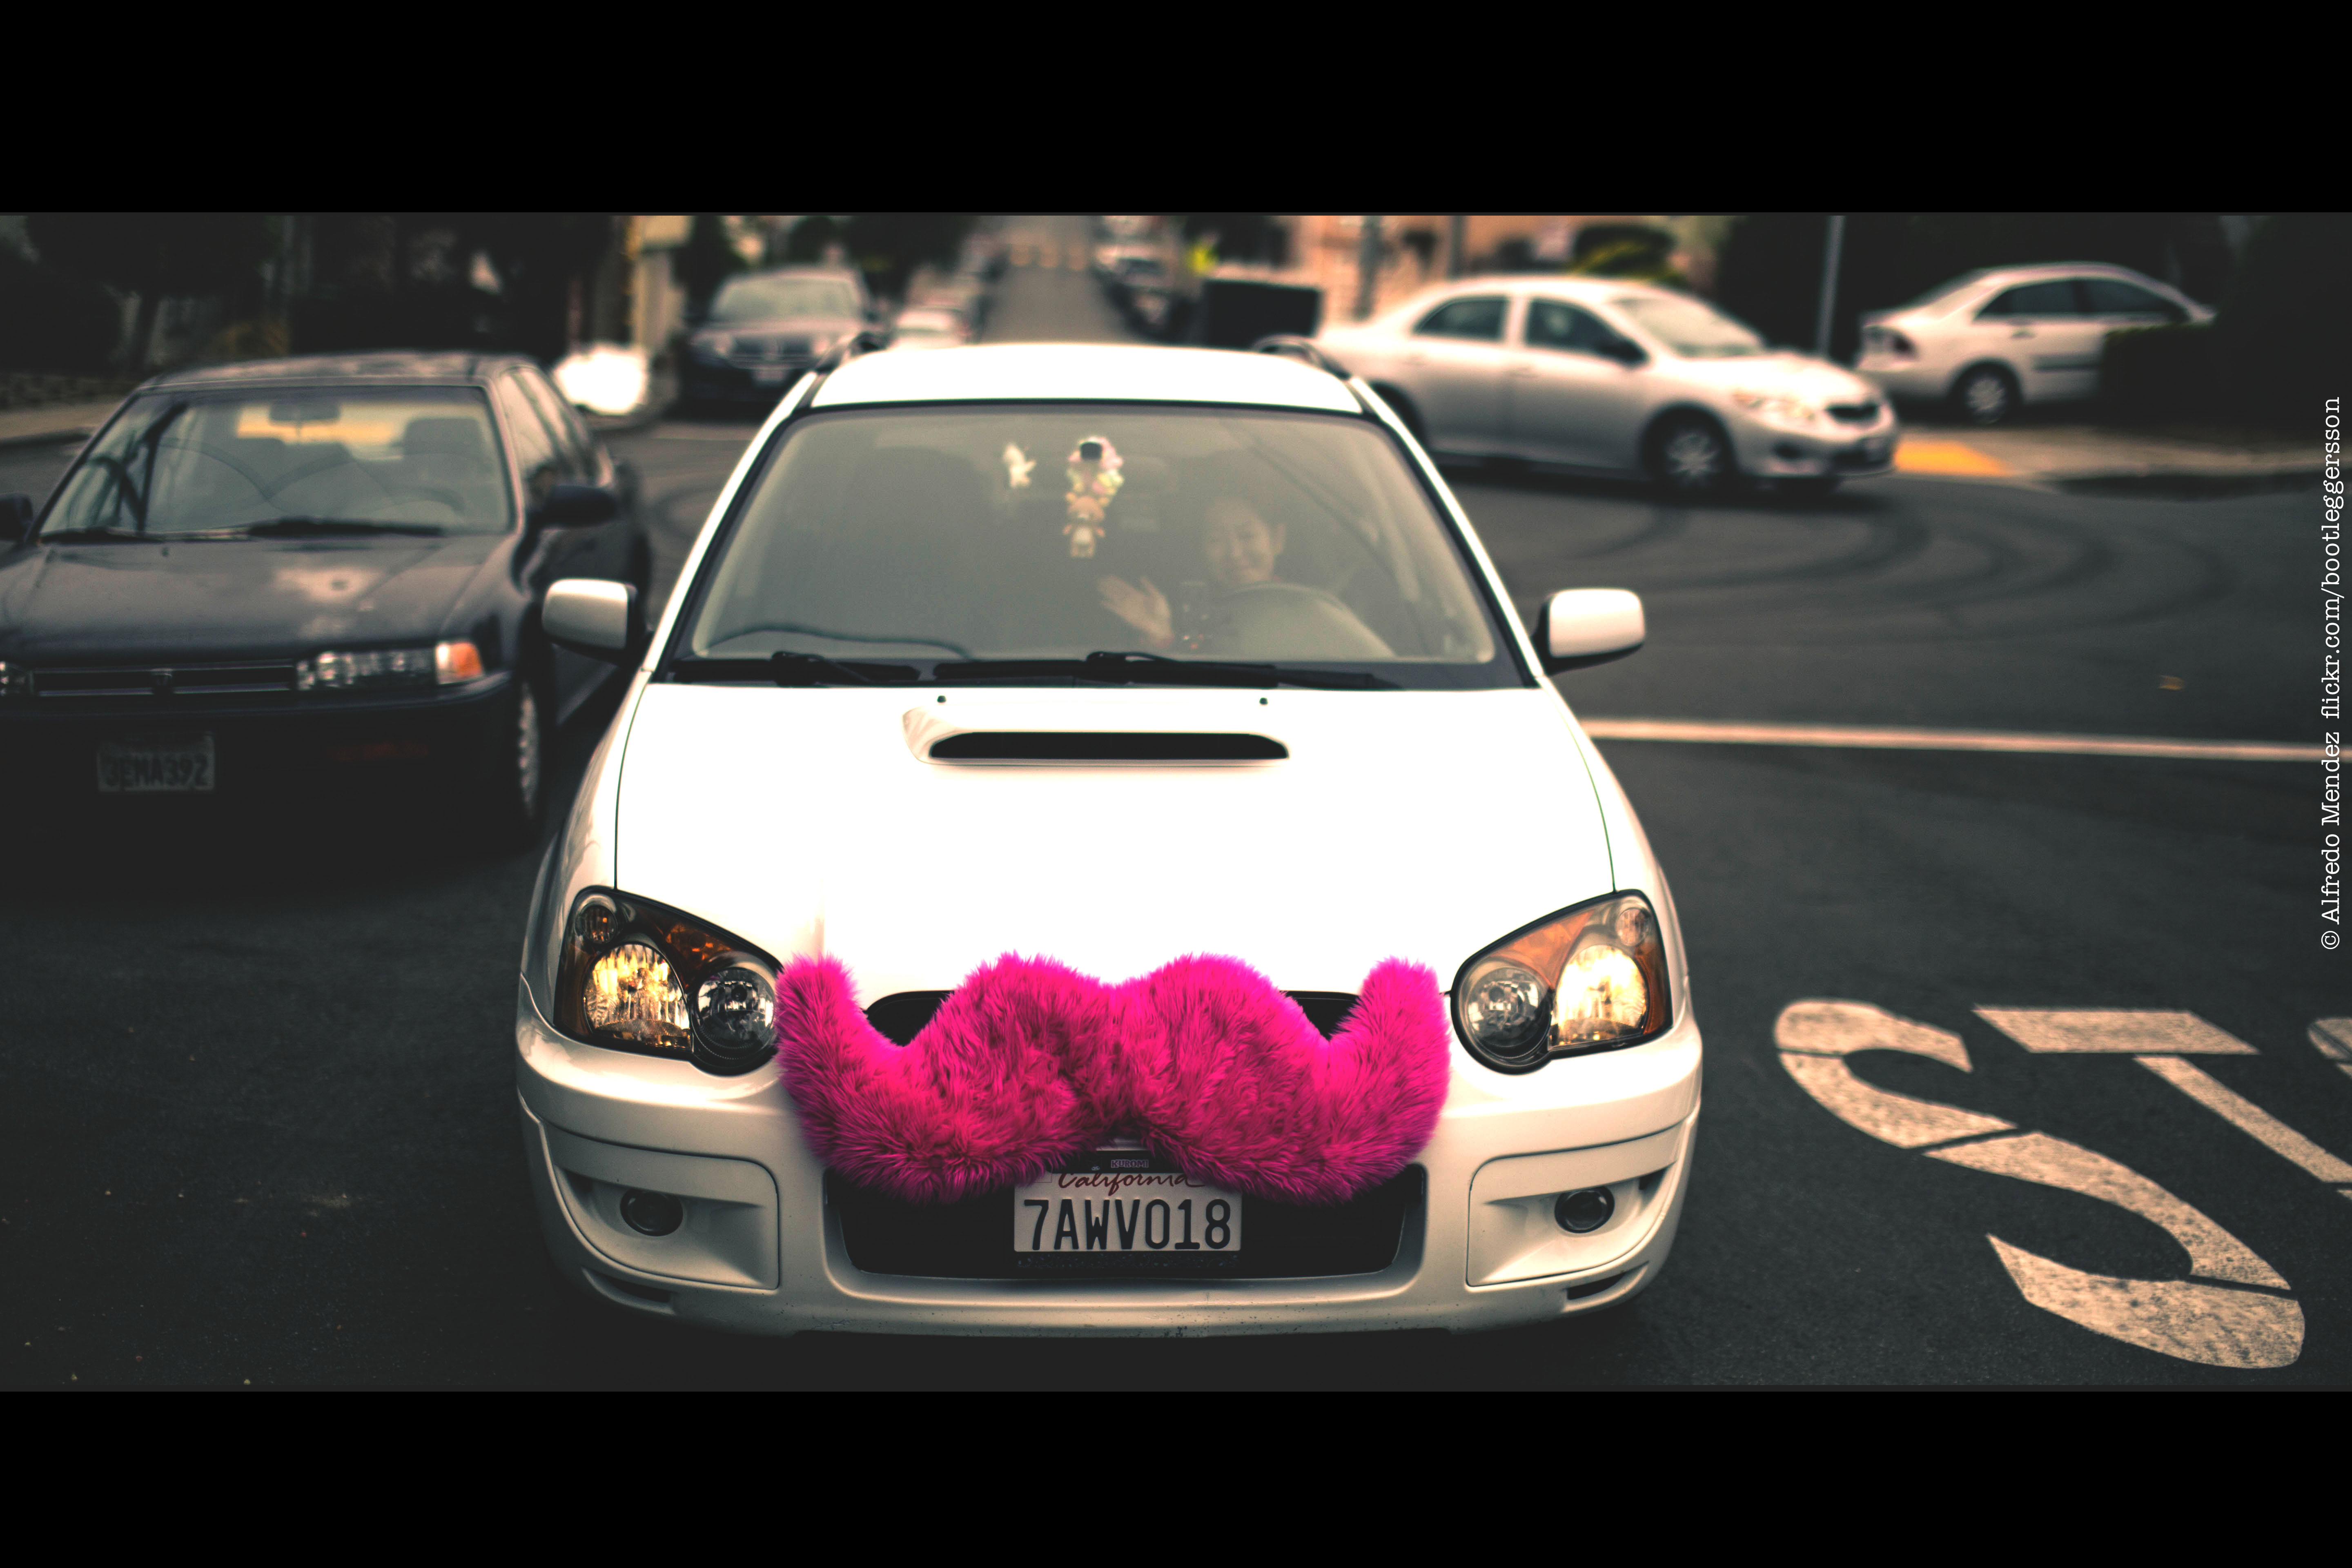 一张照片显示了一辆汽车的前格栅上留着大而模糊的粉红色胡须。